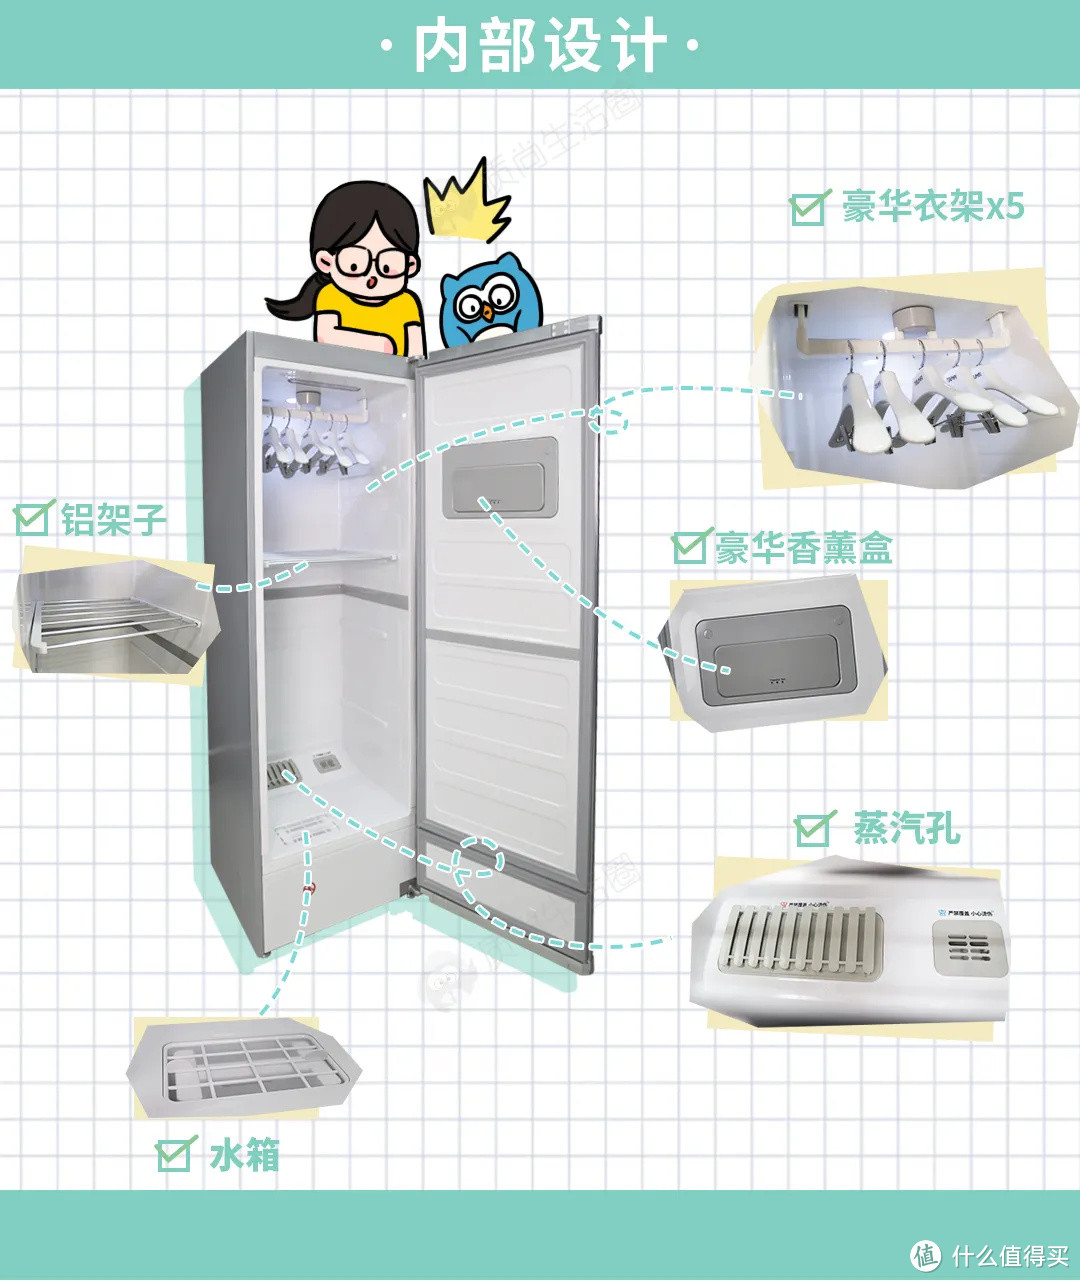 新物初体验丨干衣机设计成冰箱的样子，就能卖近万元了？